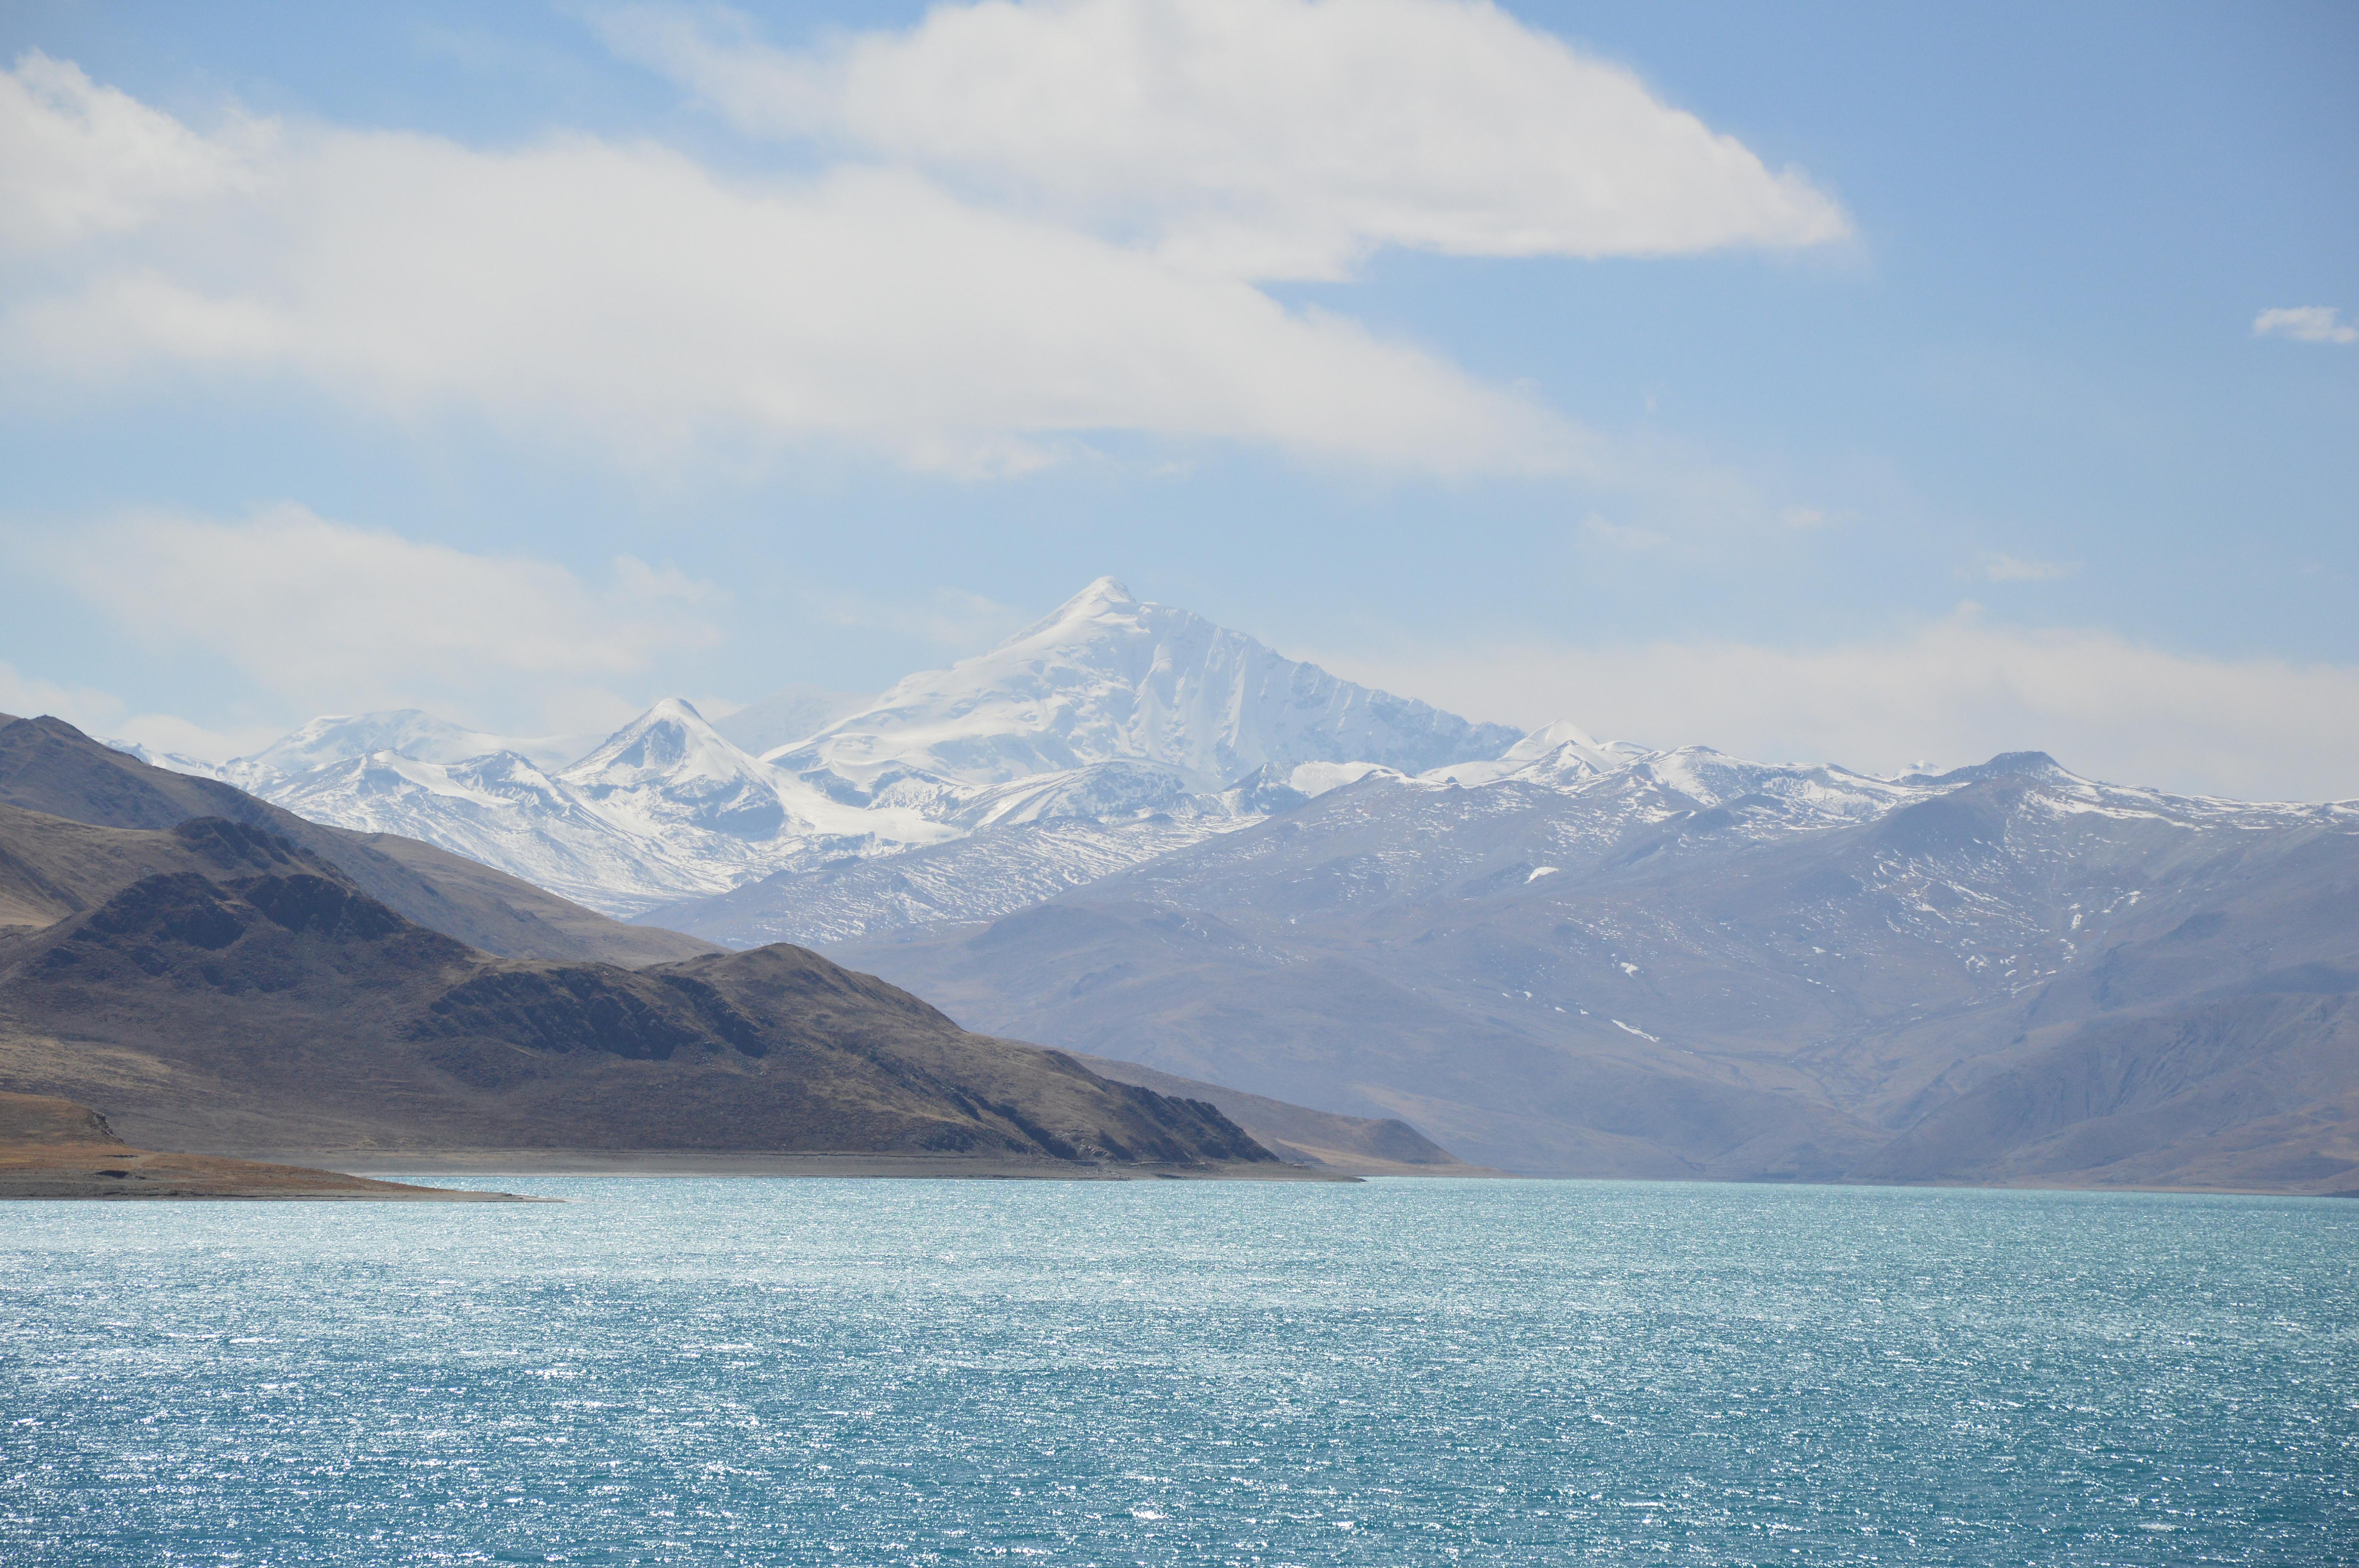 羊卓雍措面积675平方千米,湖面海拔4,441米.